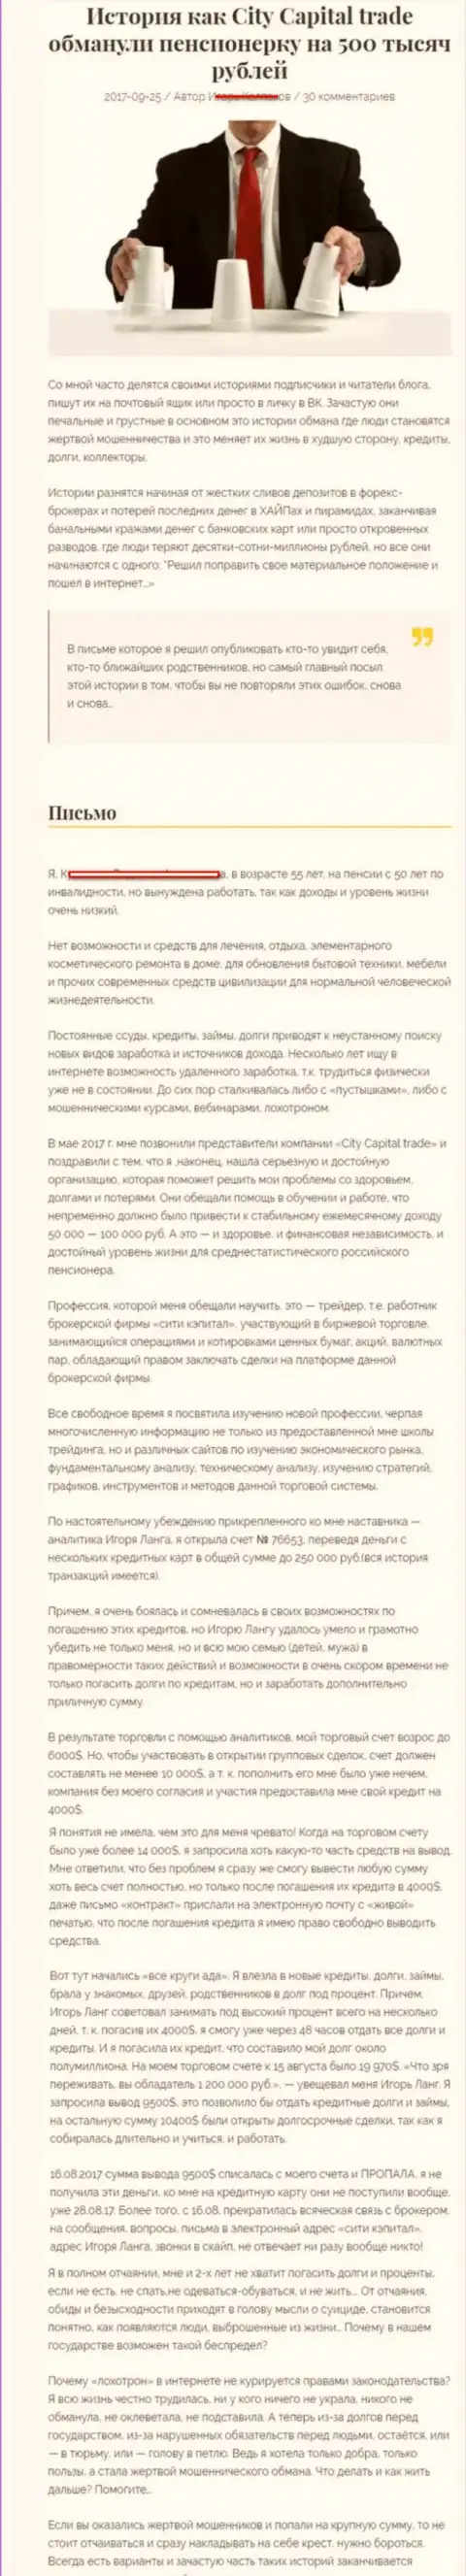 СитиКапитал Трейд развели клиентку пенсионного возраста - инвалида на сумму 500000 российских рублей - РАЗВОДИЛЫ !!!